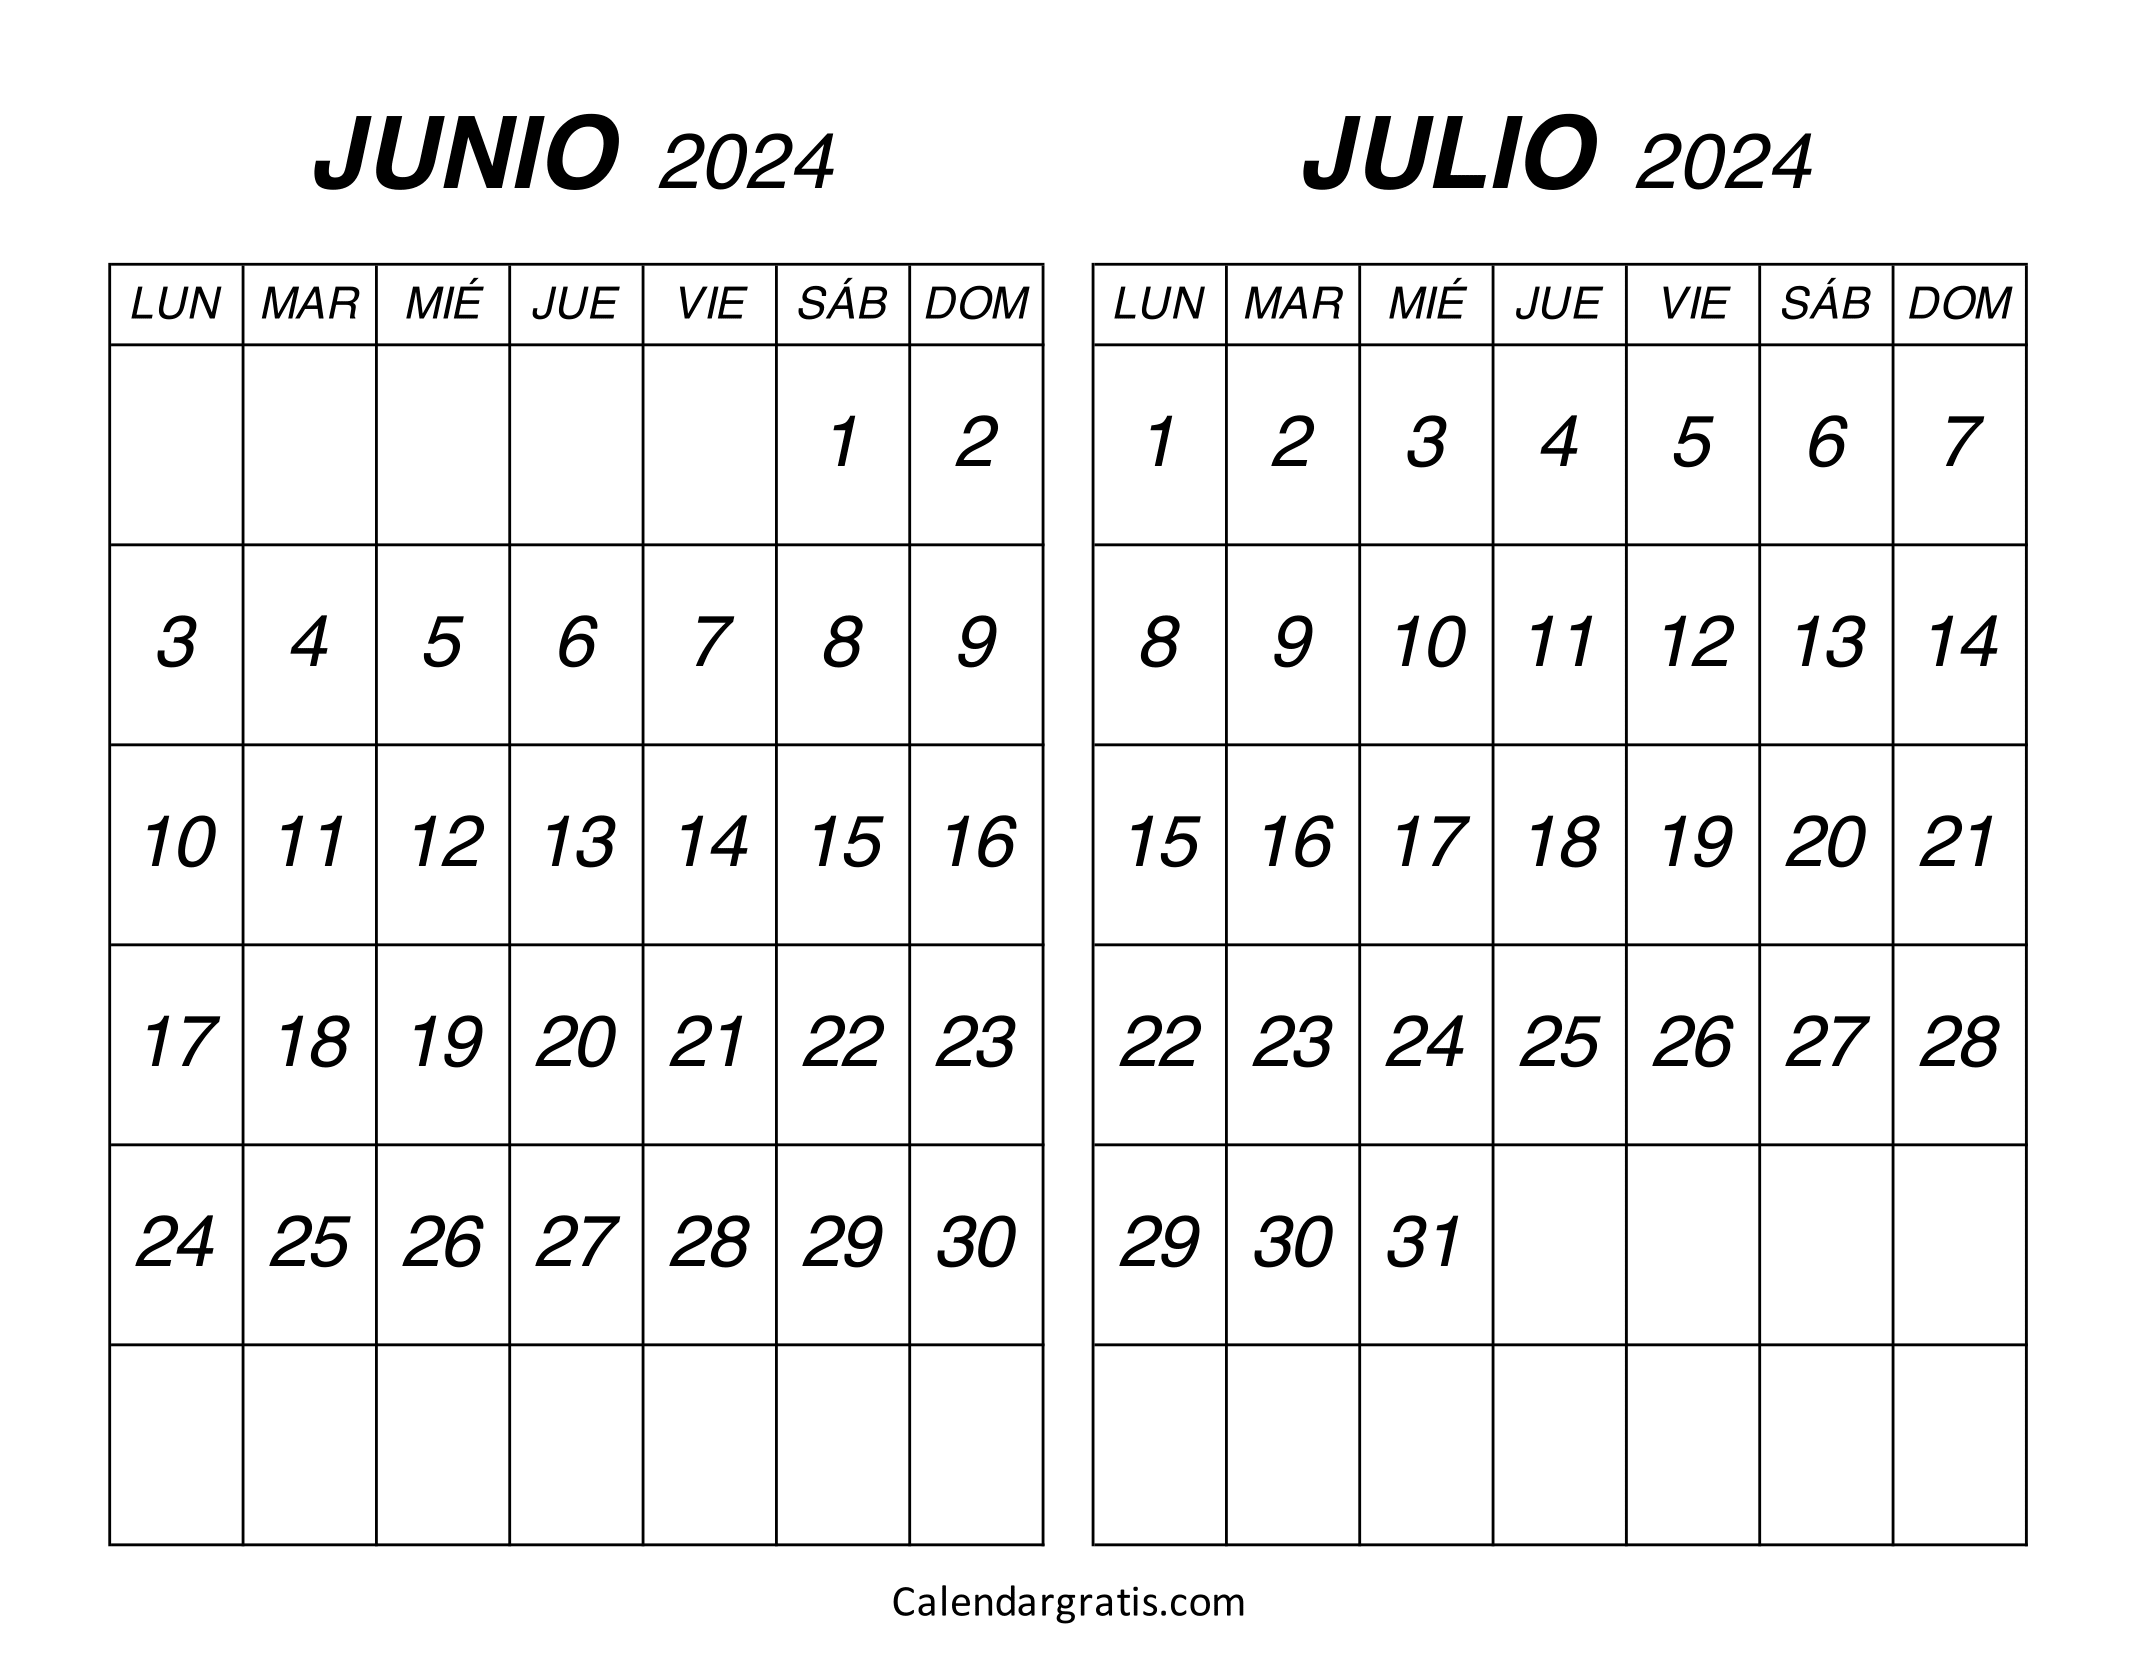 Calendario junio julio 2024 para imprimir